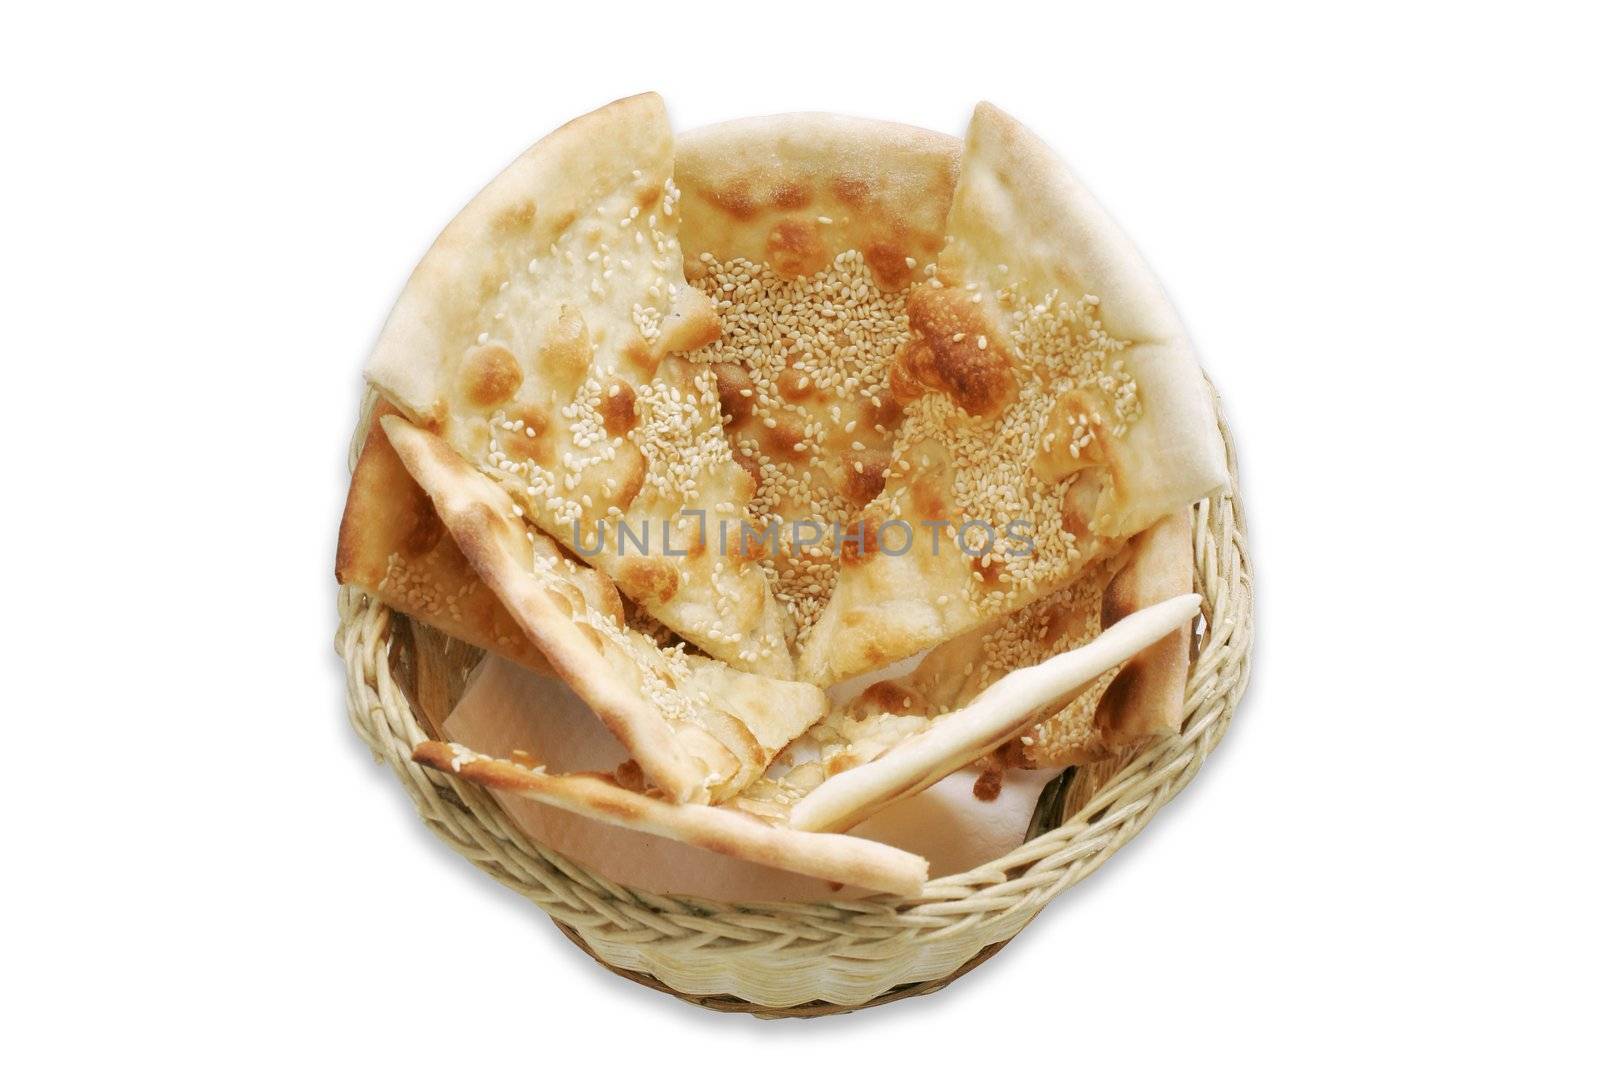  Focaccio - italian bread with sesame in basket   